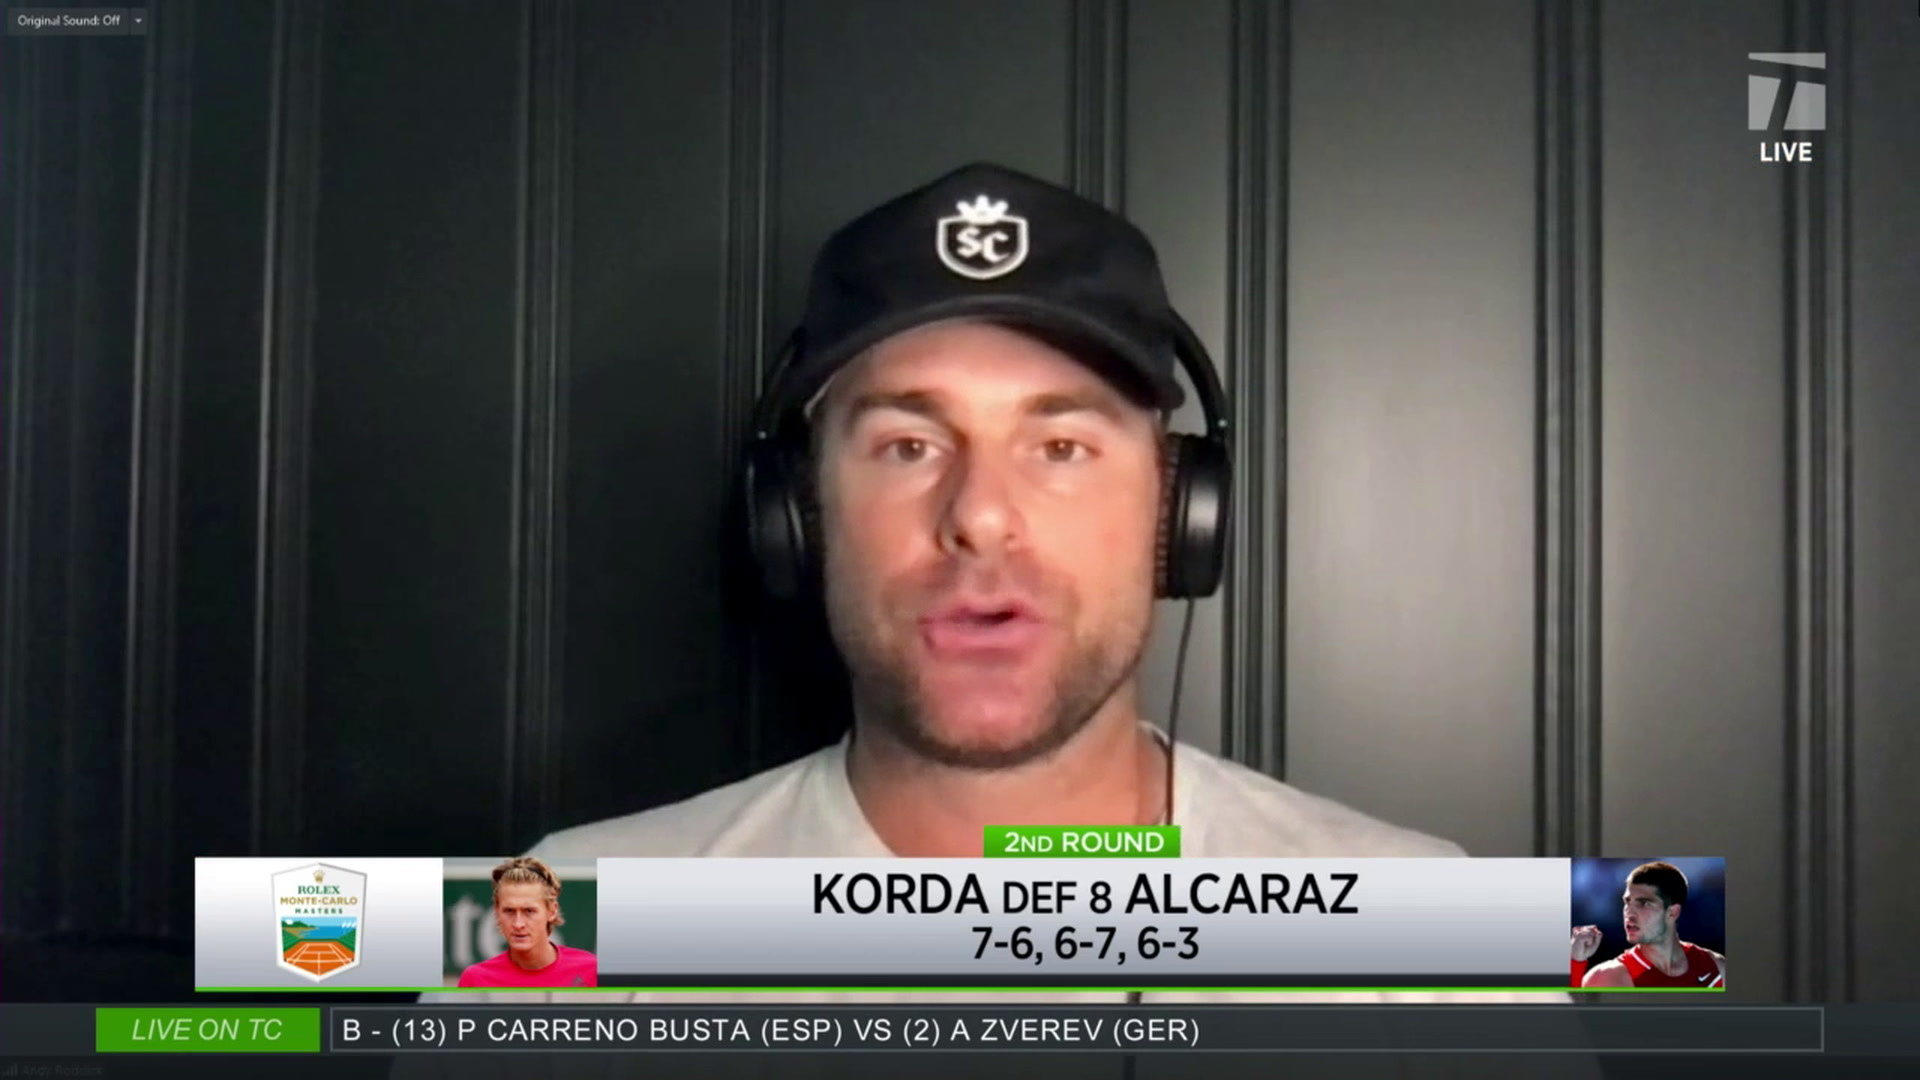 Tennis Channel Live Korda Defeats Alcaraz in Monte Carlo Tennis